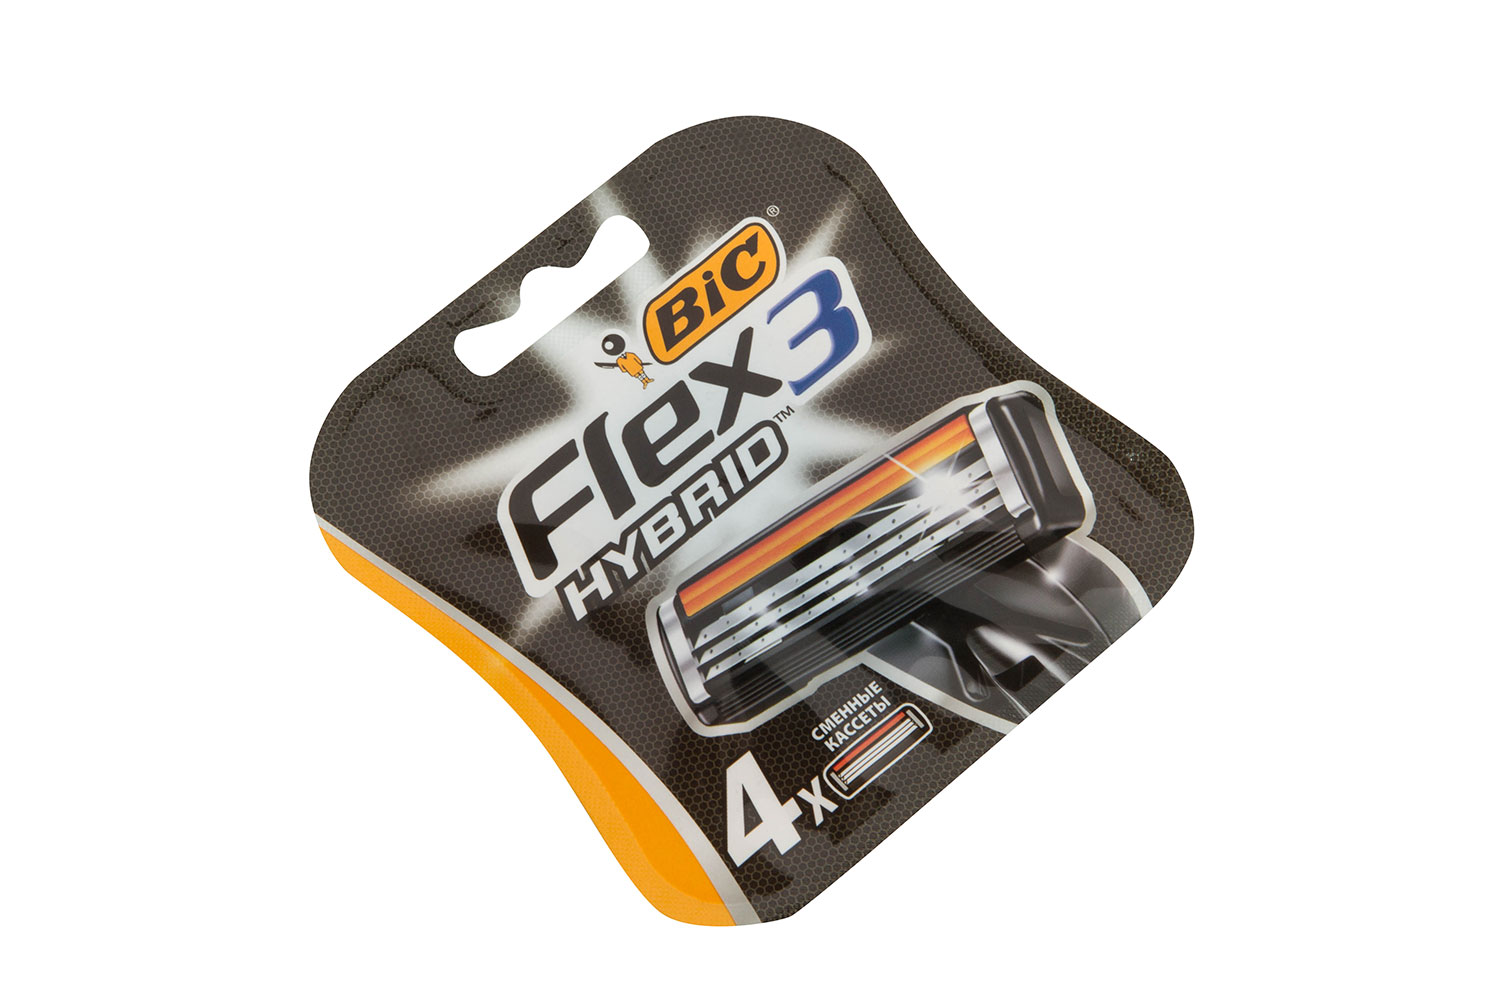 Bic flex hybrid купить. BIC Флекс 3 гибрид 4 шт. BIC Flex 3 кассеты. Сменные кассеты BIC flex3 Hybrid, 4 кассеты. BIC бритва "Флекс 3гибрид"(станок+кассета),бл.2*10.